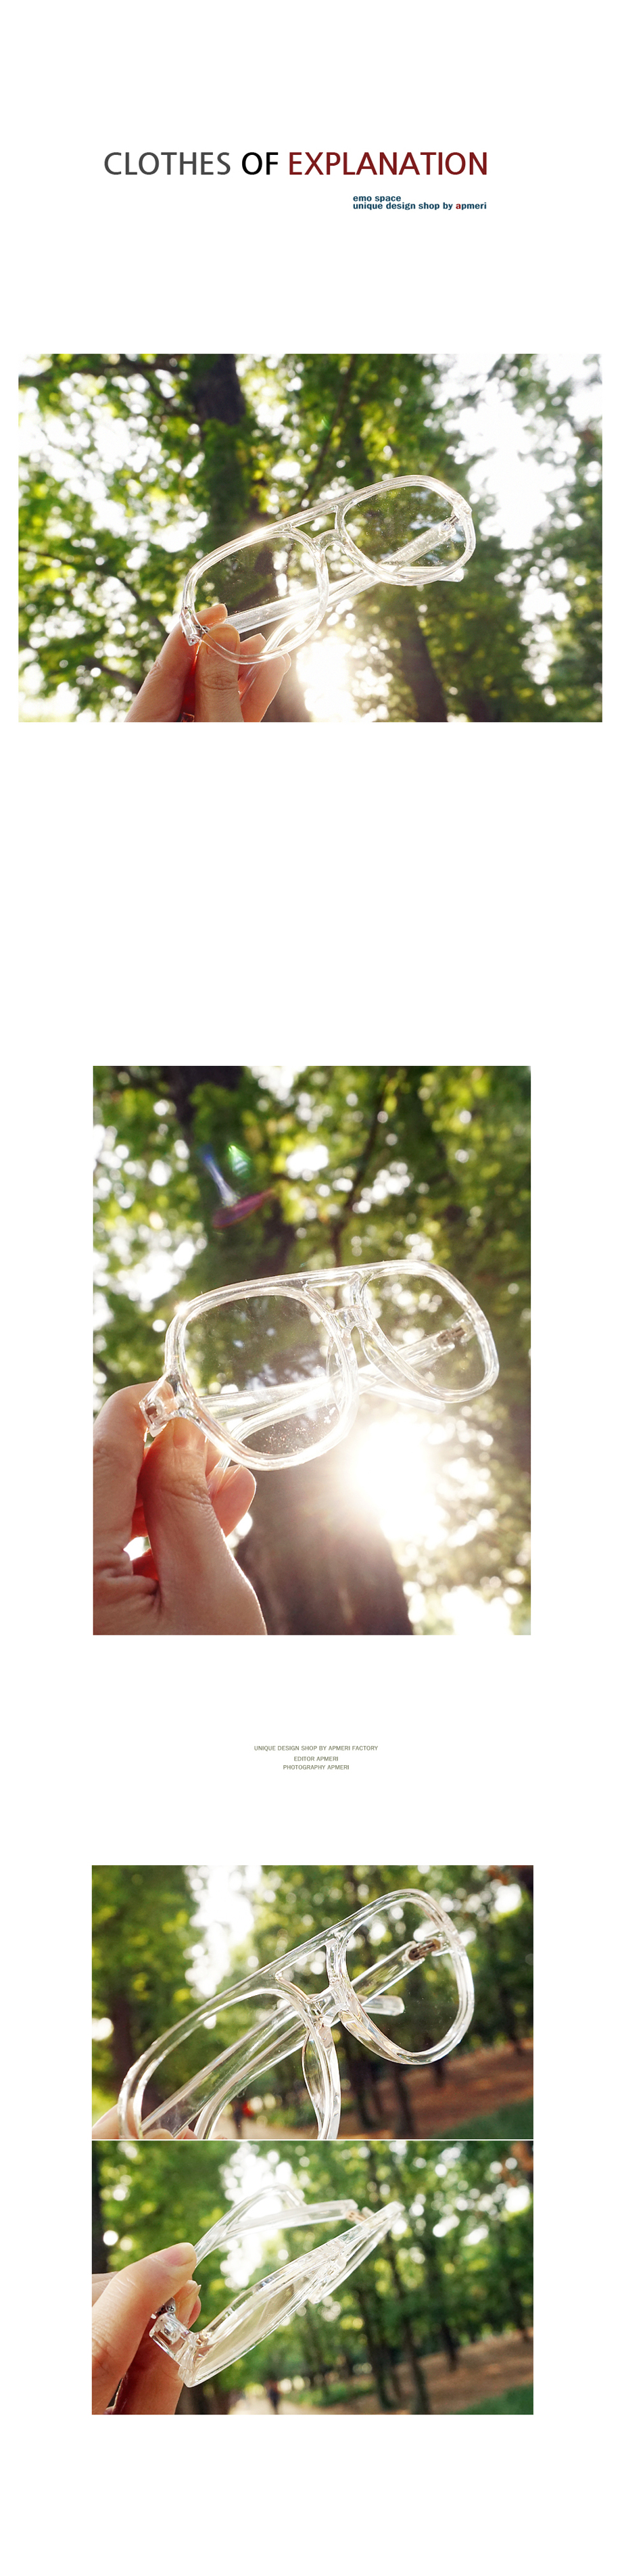 몽한적인 투명 오버렌즈 안경 15,210원 - 앞머리 패션잡화, 아이웨어, 안경, 투명안경테 바보사랑 몽한적인 투명 오버렌즈 안경 15,210원 - 앞머리 패션잡화, 아이웨어, 안경, 투명안경테 바보사랑